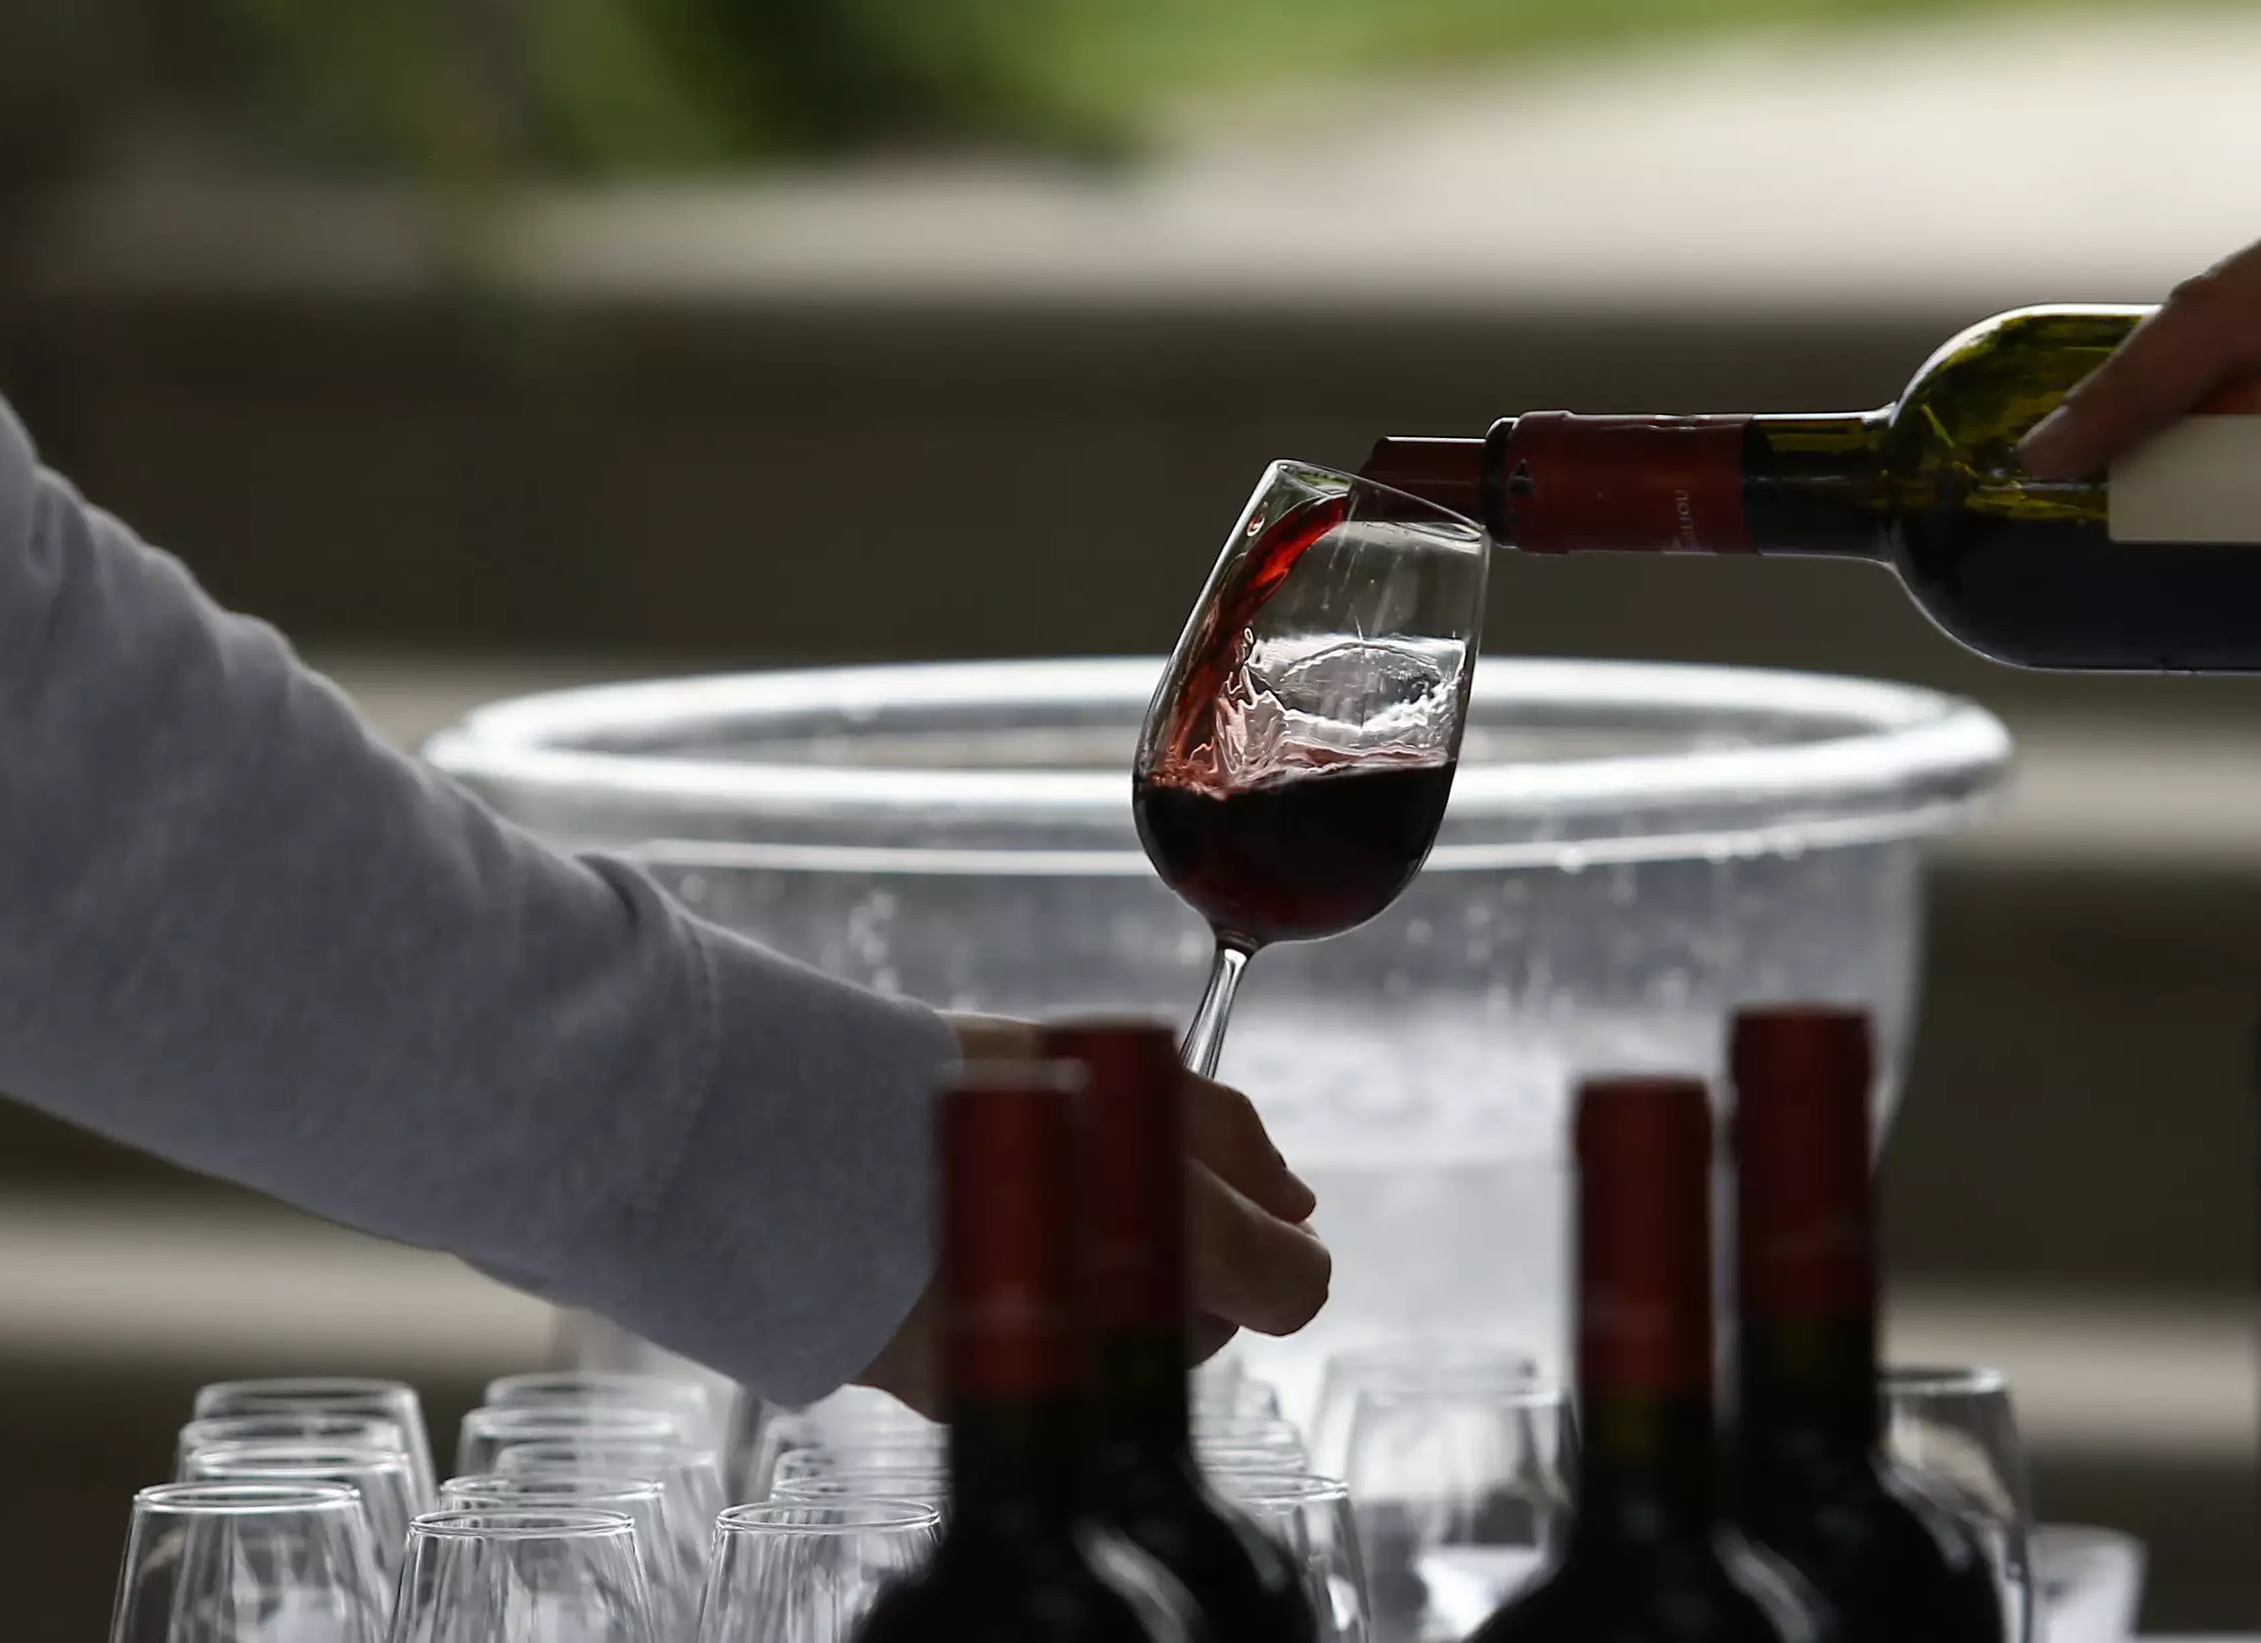 Rabbia in Italia per la decisione dell’Irlanda di mettere etichette di avvertenza sanitaria sul vino